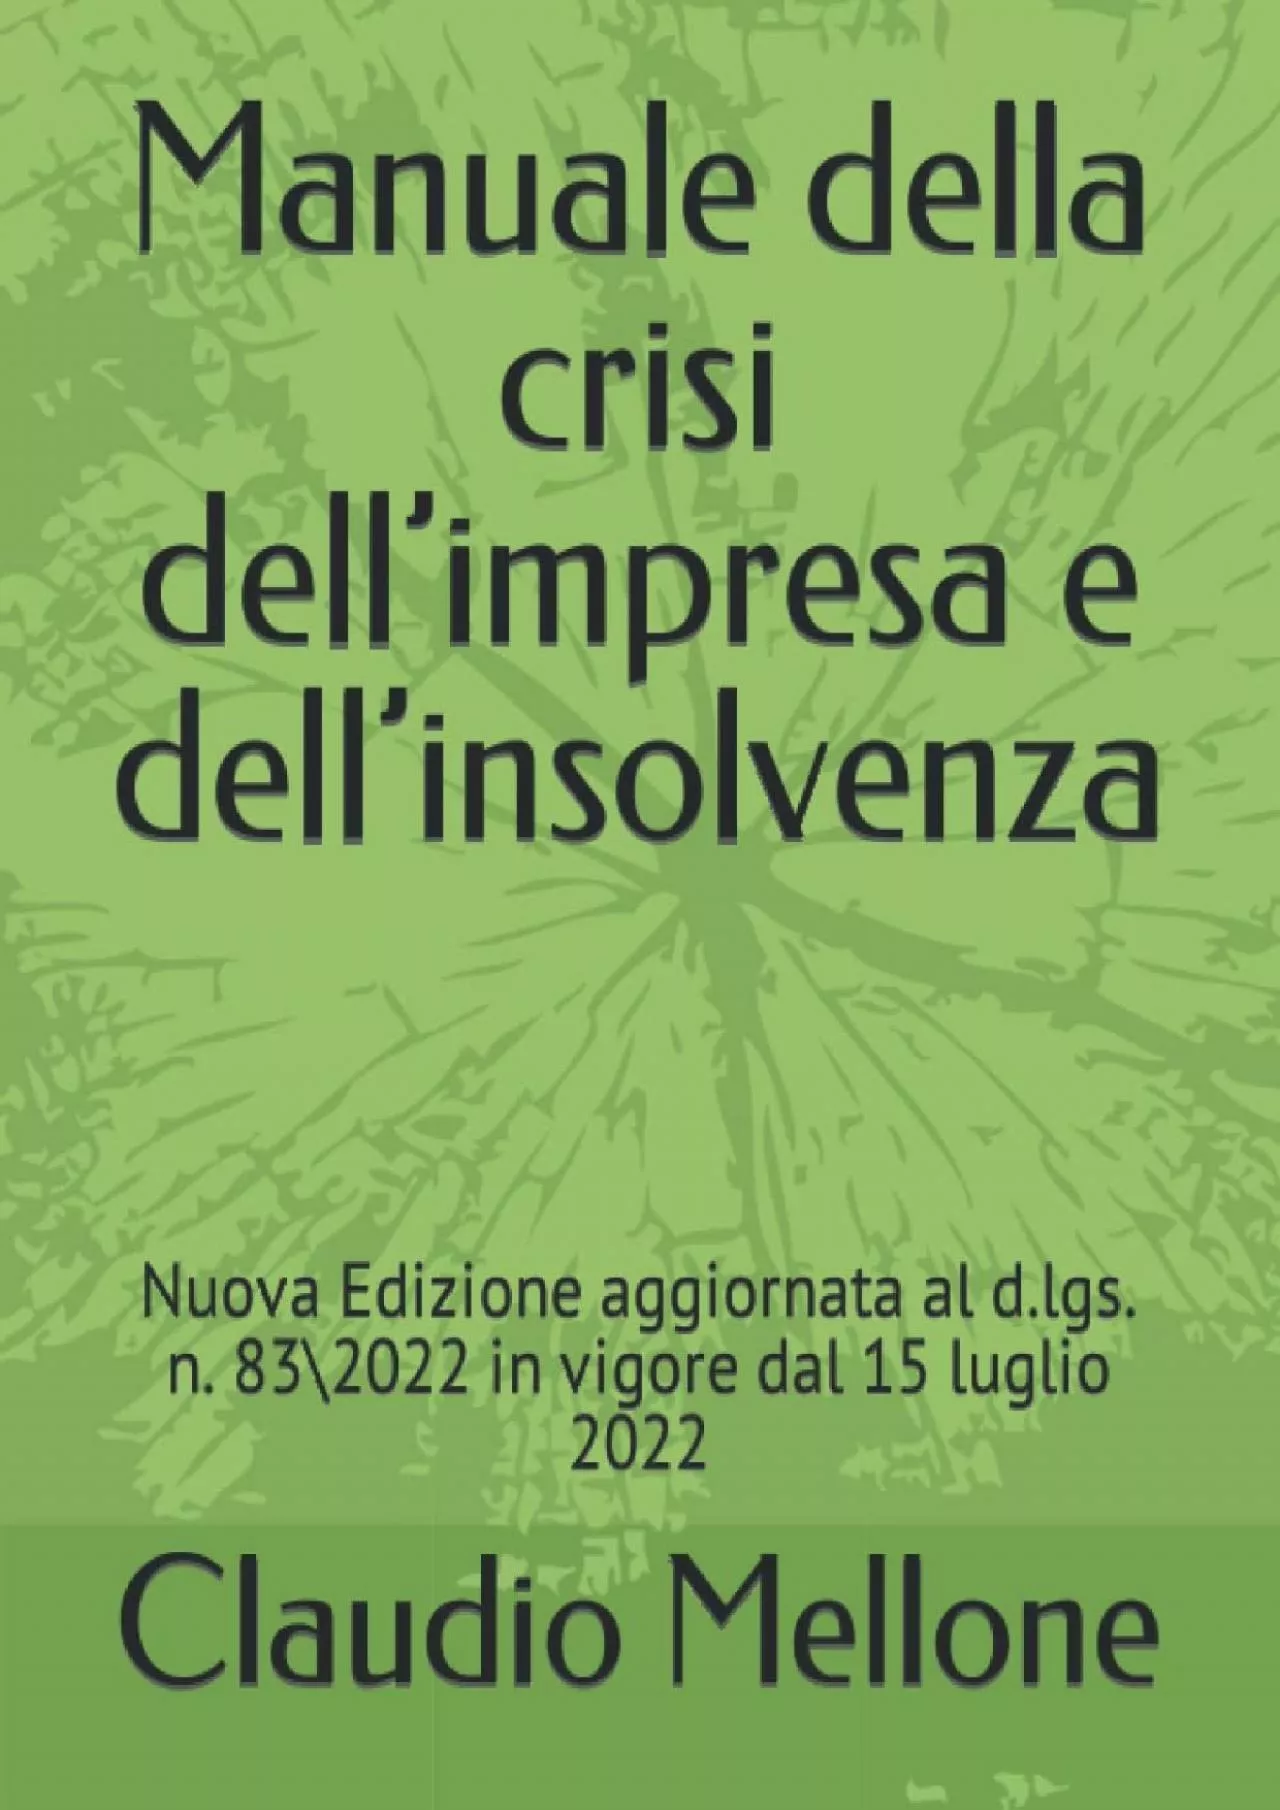 [DOWNLOAD] Manuale della crisi dell’impresa e dell’insolvenza: Nuova Edizione aggiornata